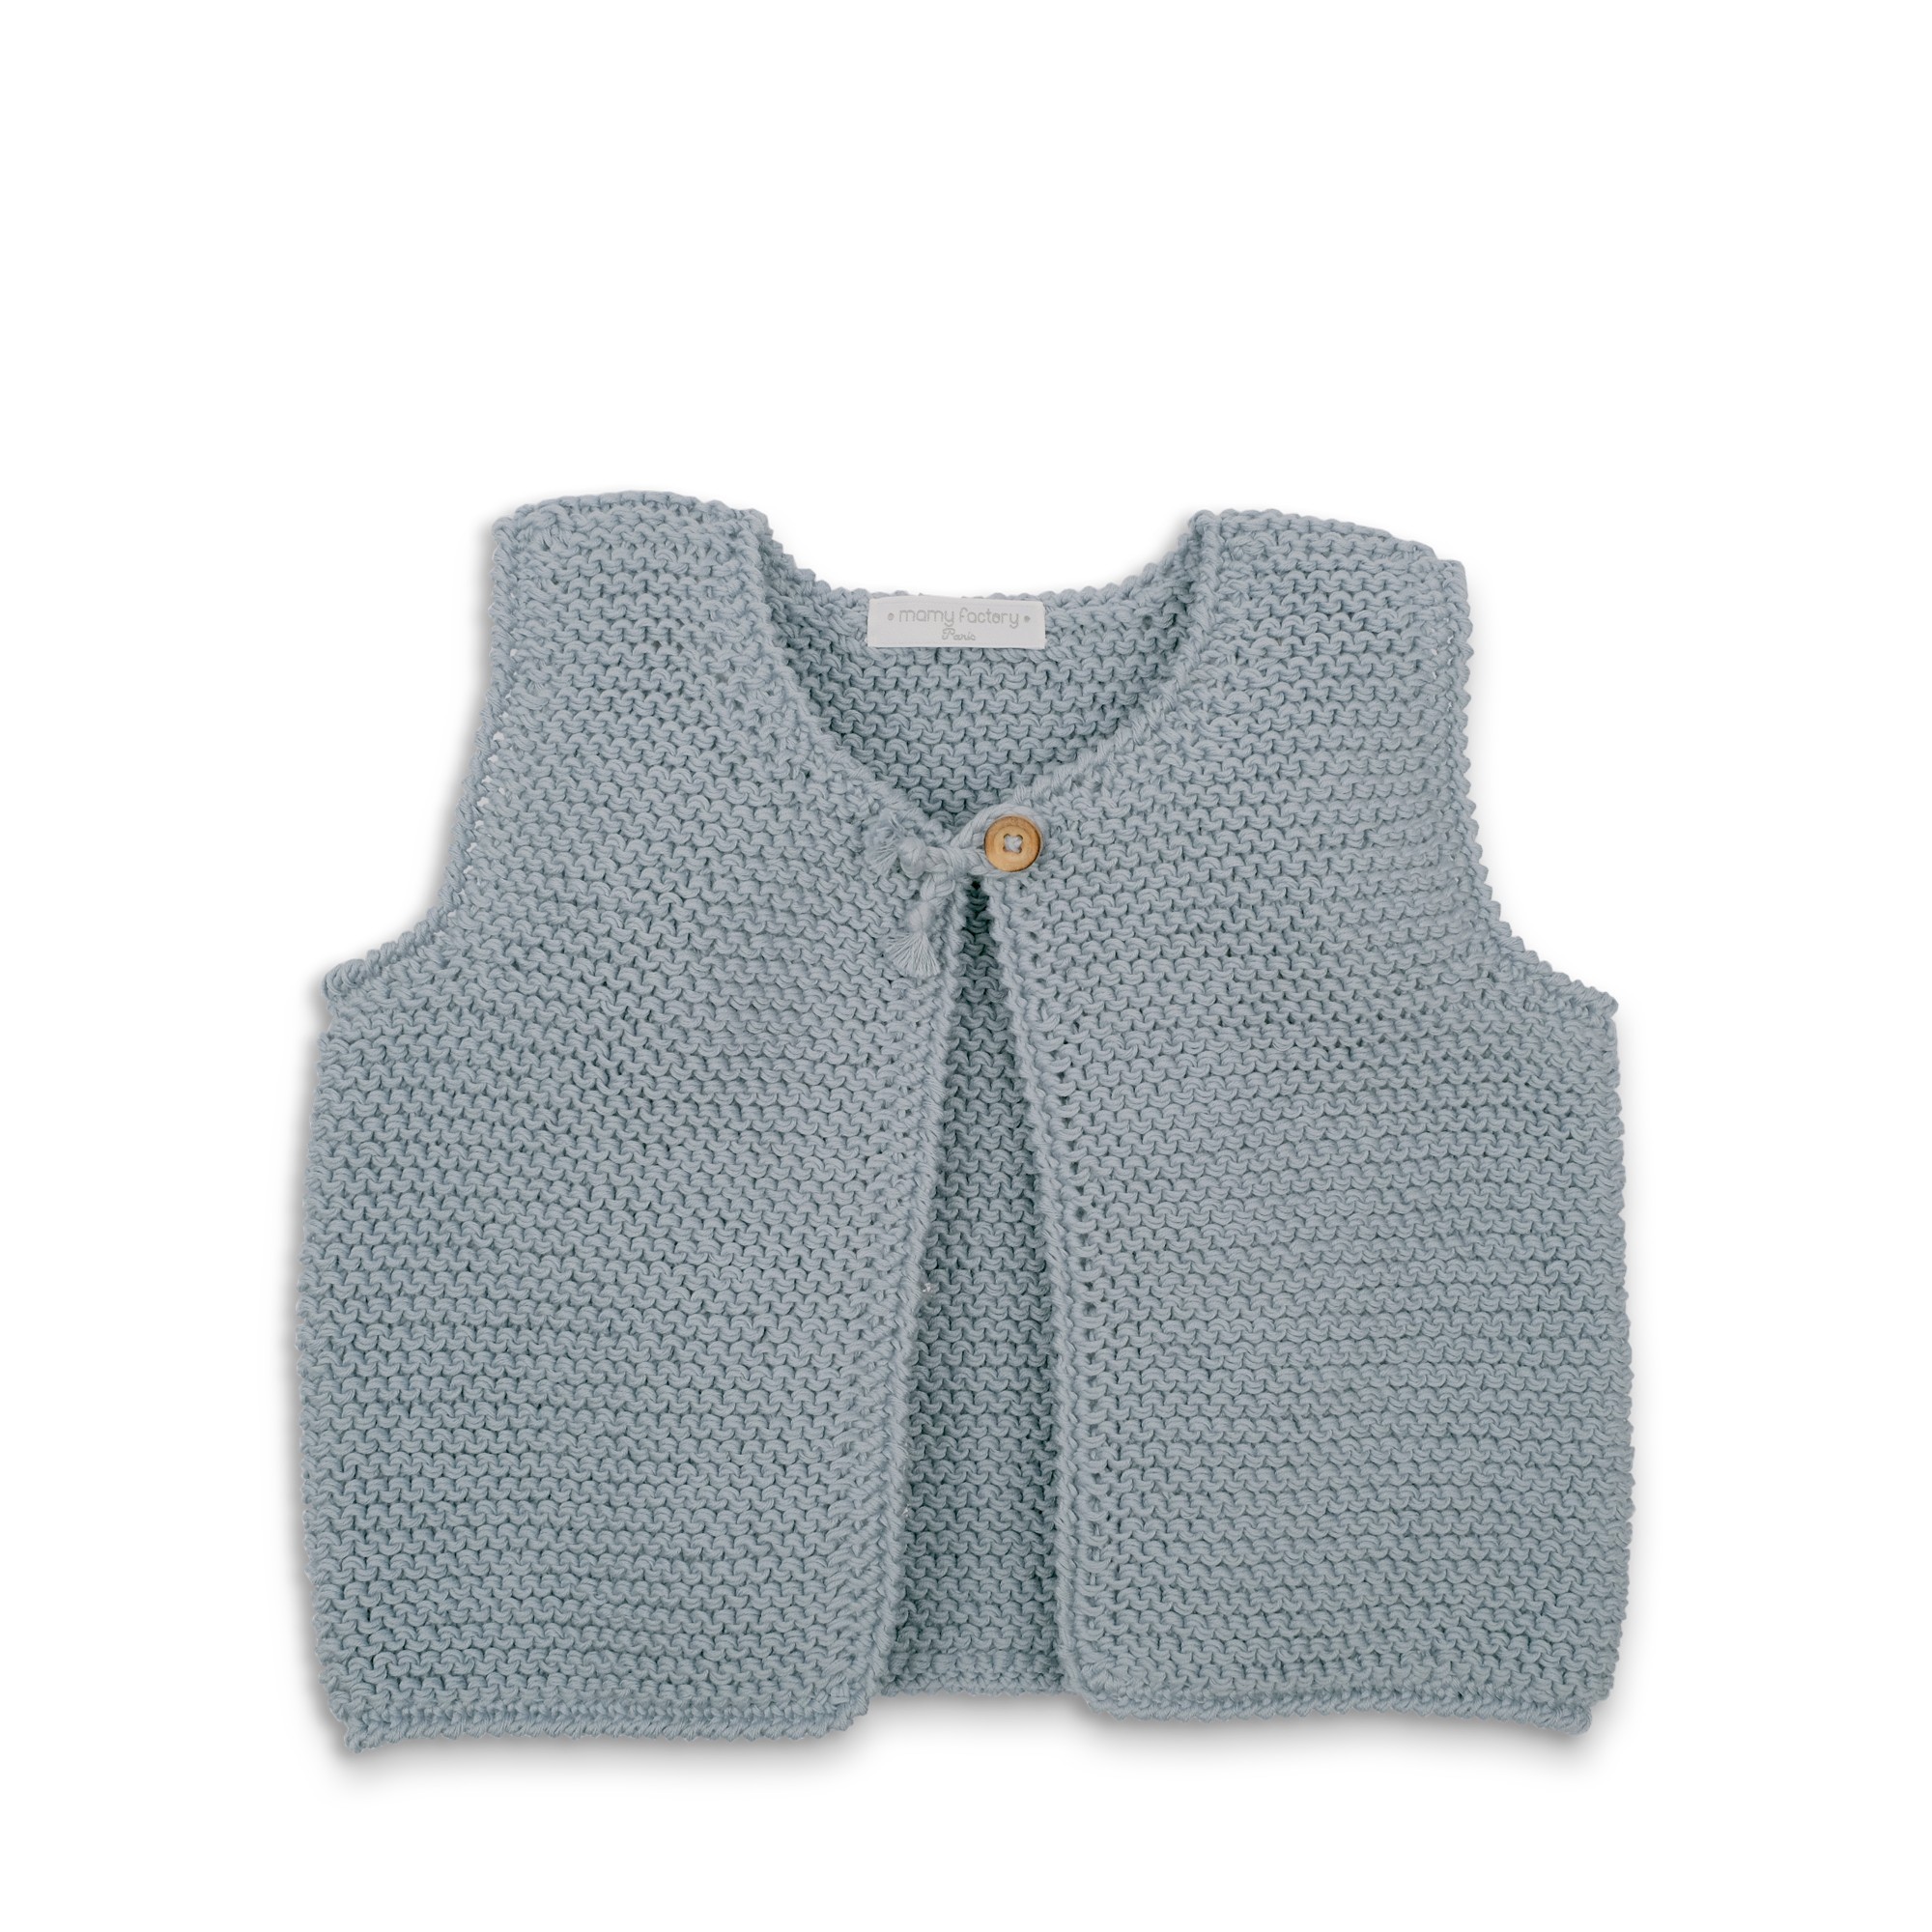 tricoter un gilet sans manche pour bebe